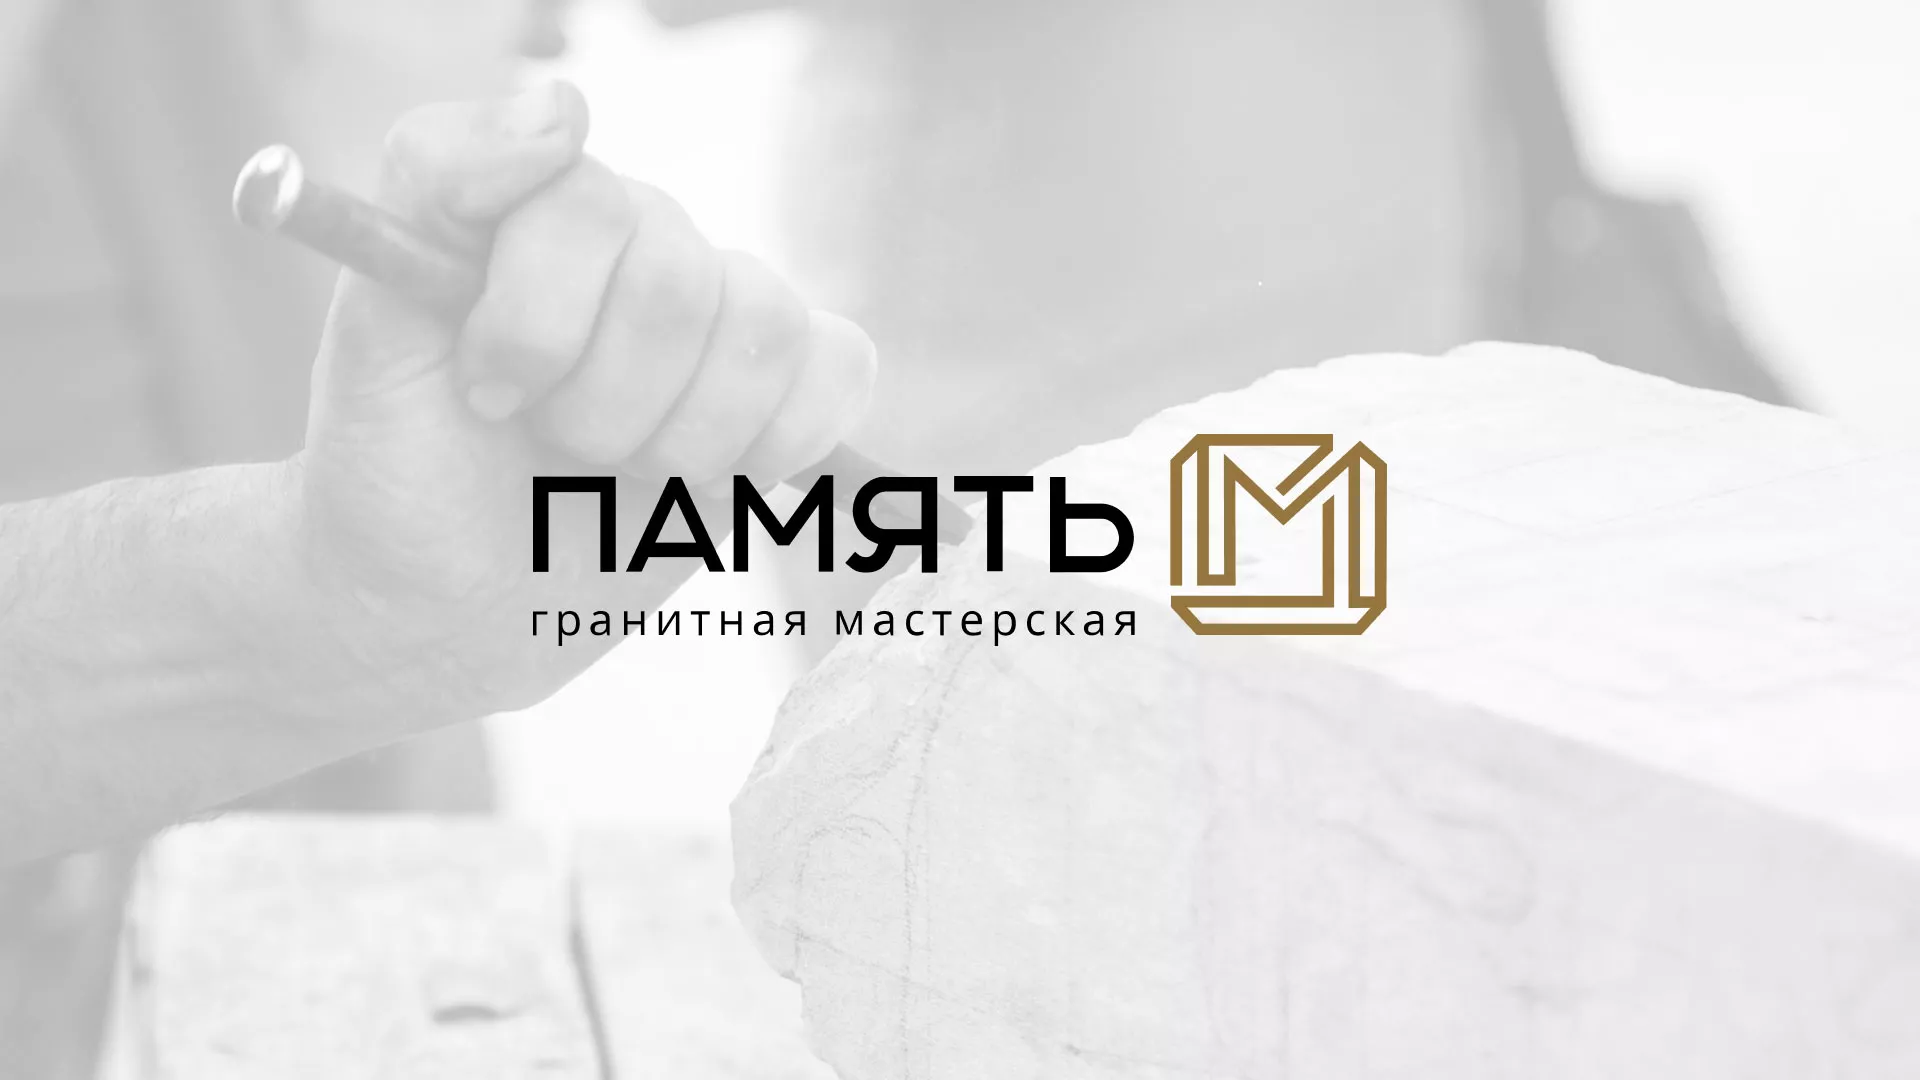 Разработка логотипа и сайта компании «Память-М» в Краснокаменске